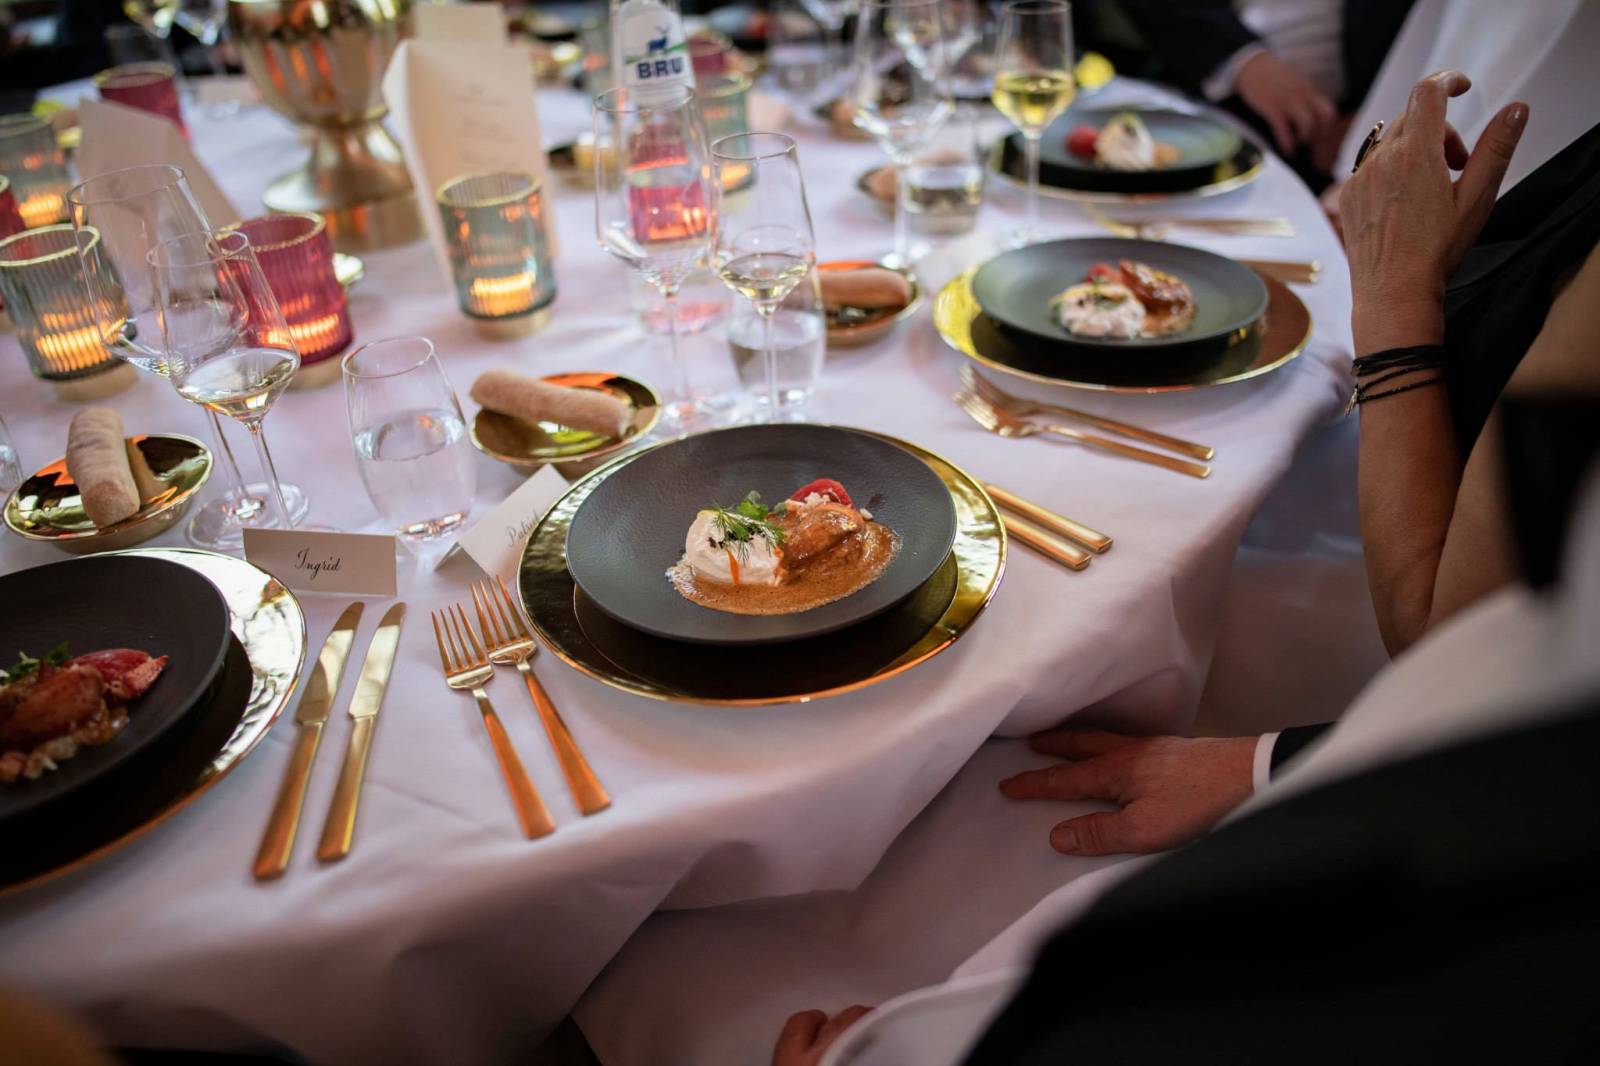 Gastronomie Nicolas - Catering - Traiteur - Trouw - Huwelijk - Bruiloft - House of Weddings - 6